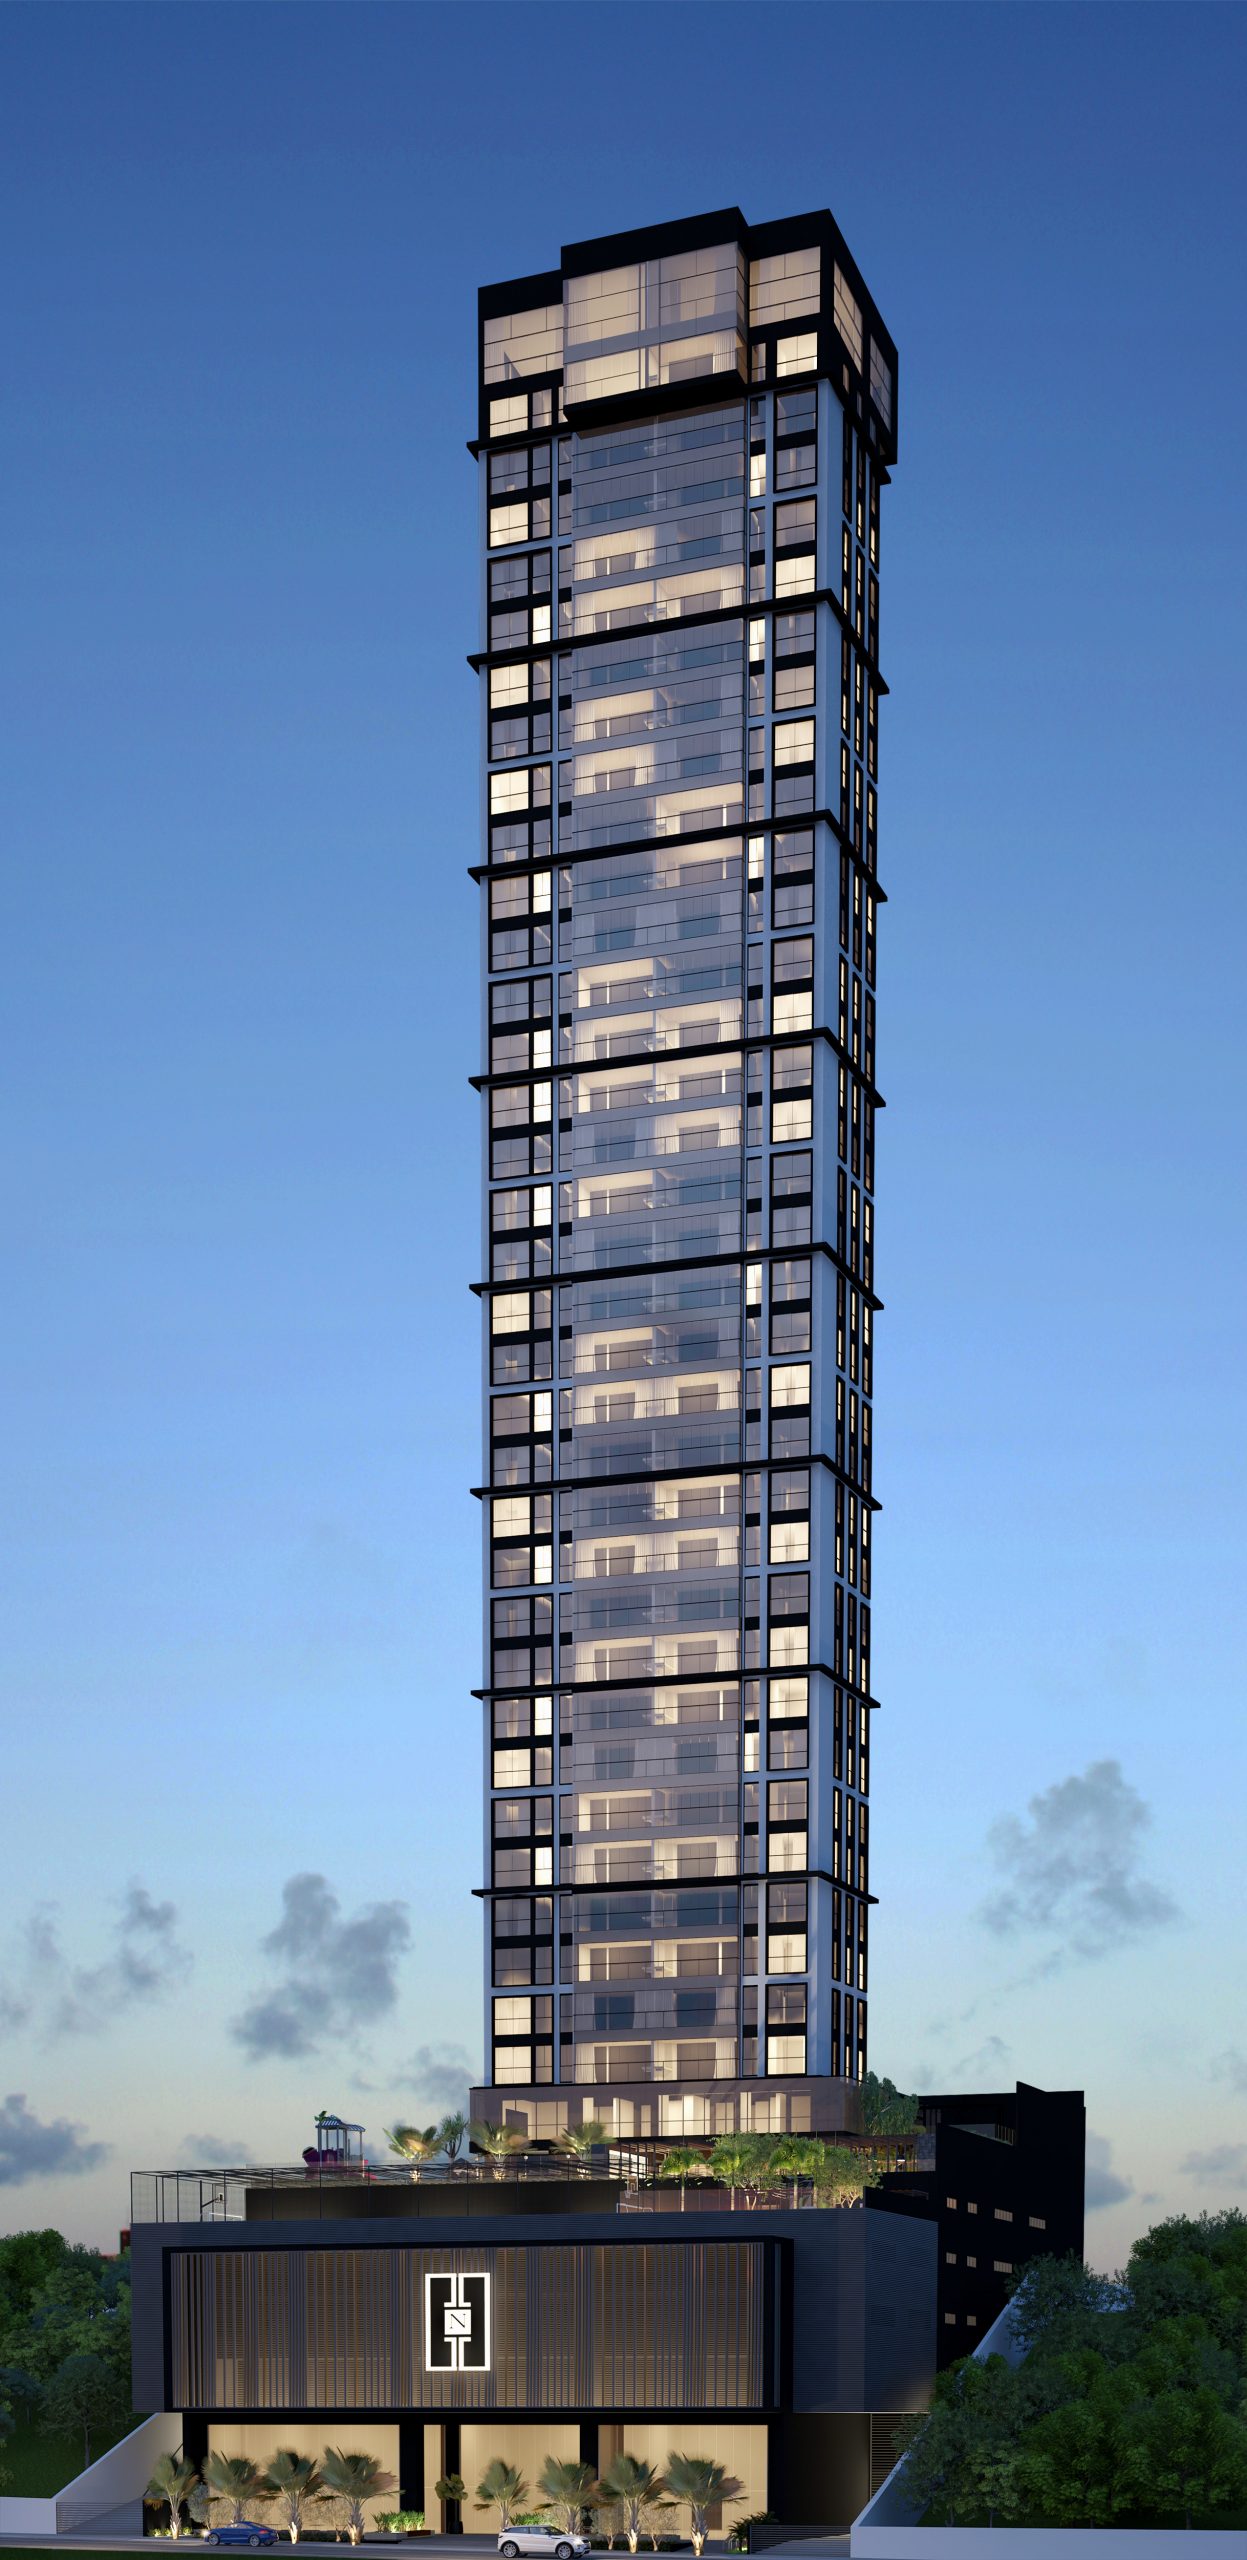 Soluções digitais da TK Elevator levam mobilidade ao Prime View, residencial de alto padrão em João Pessoa